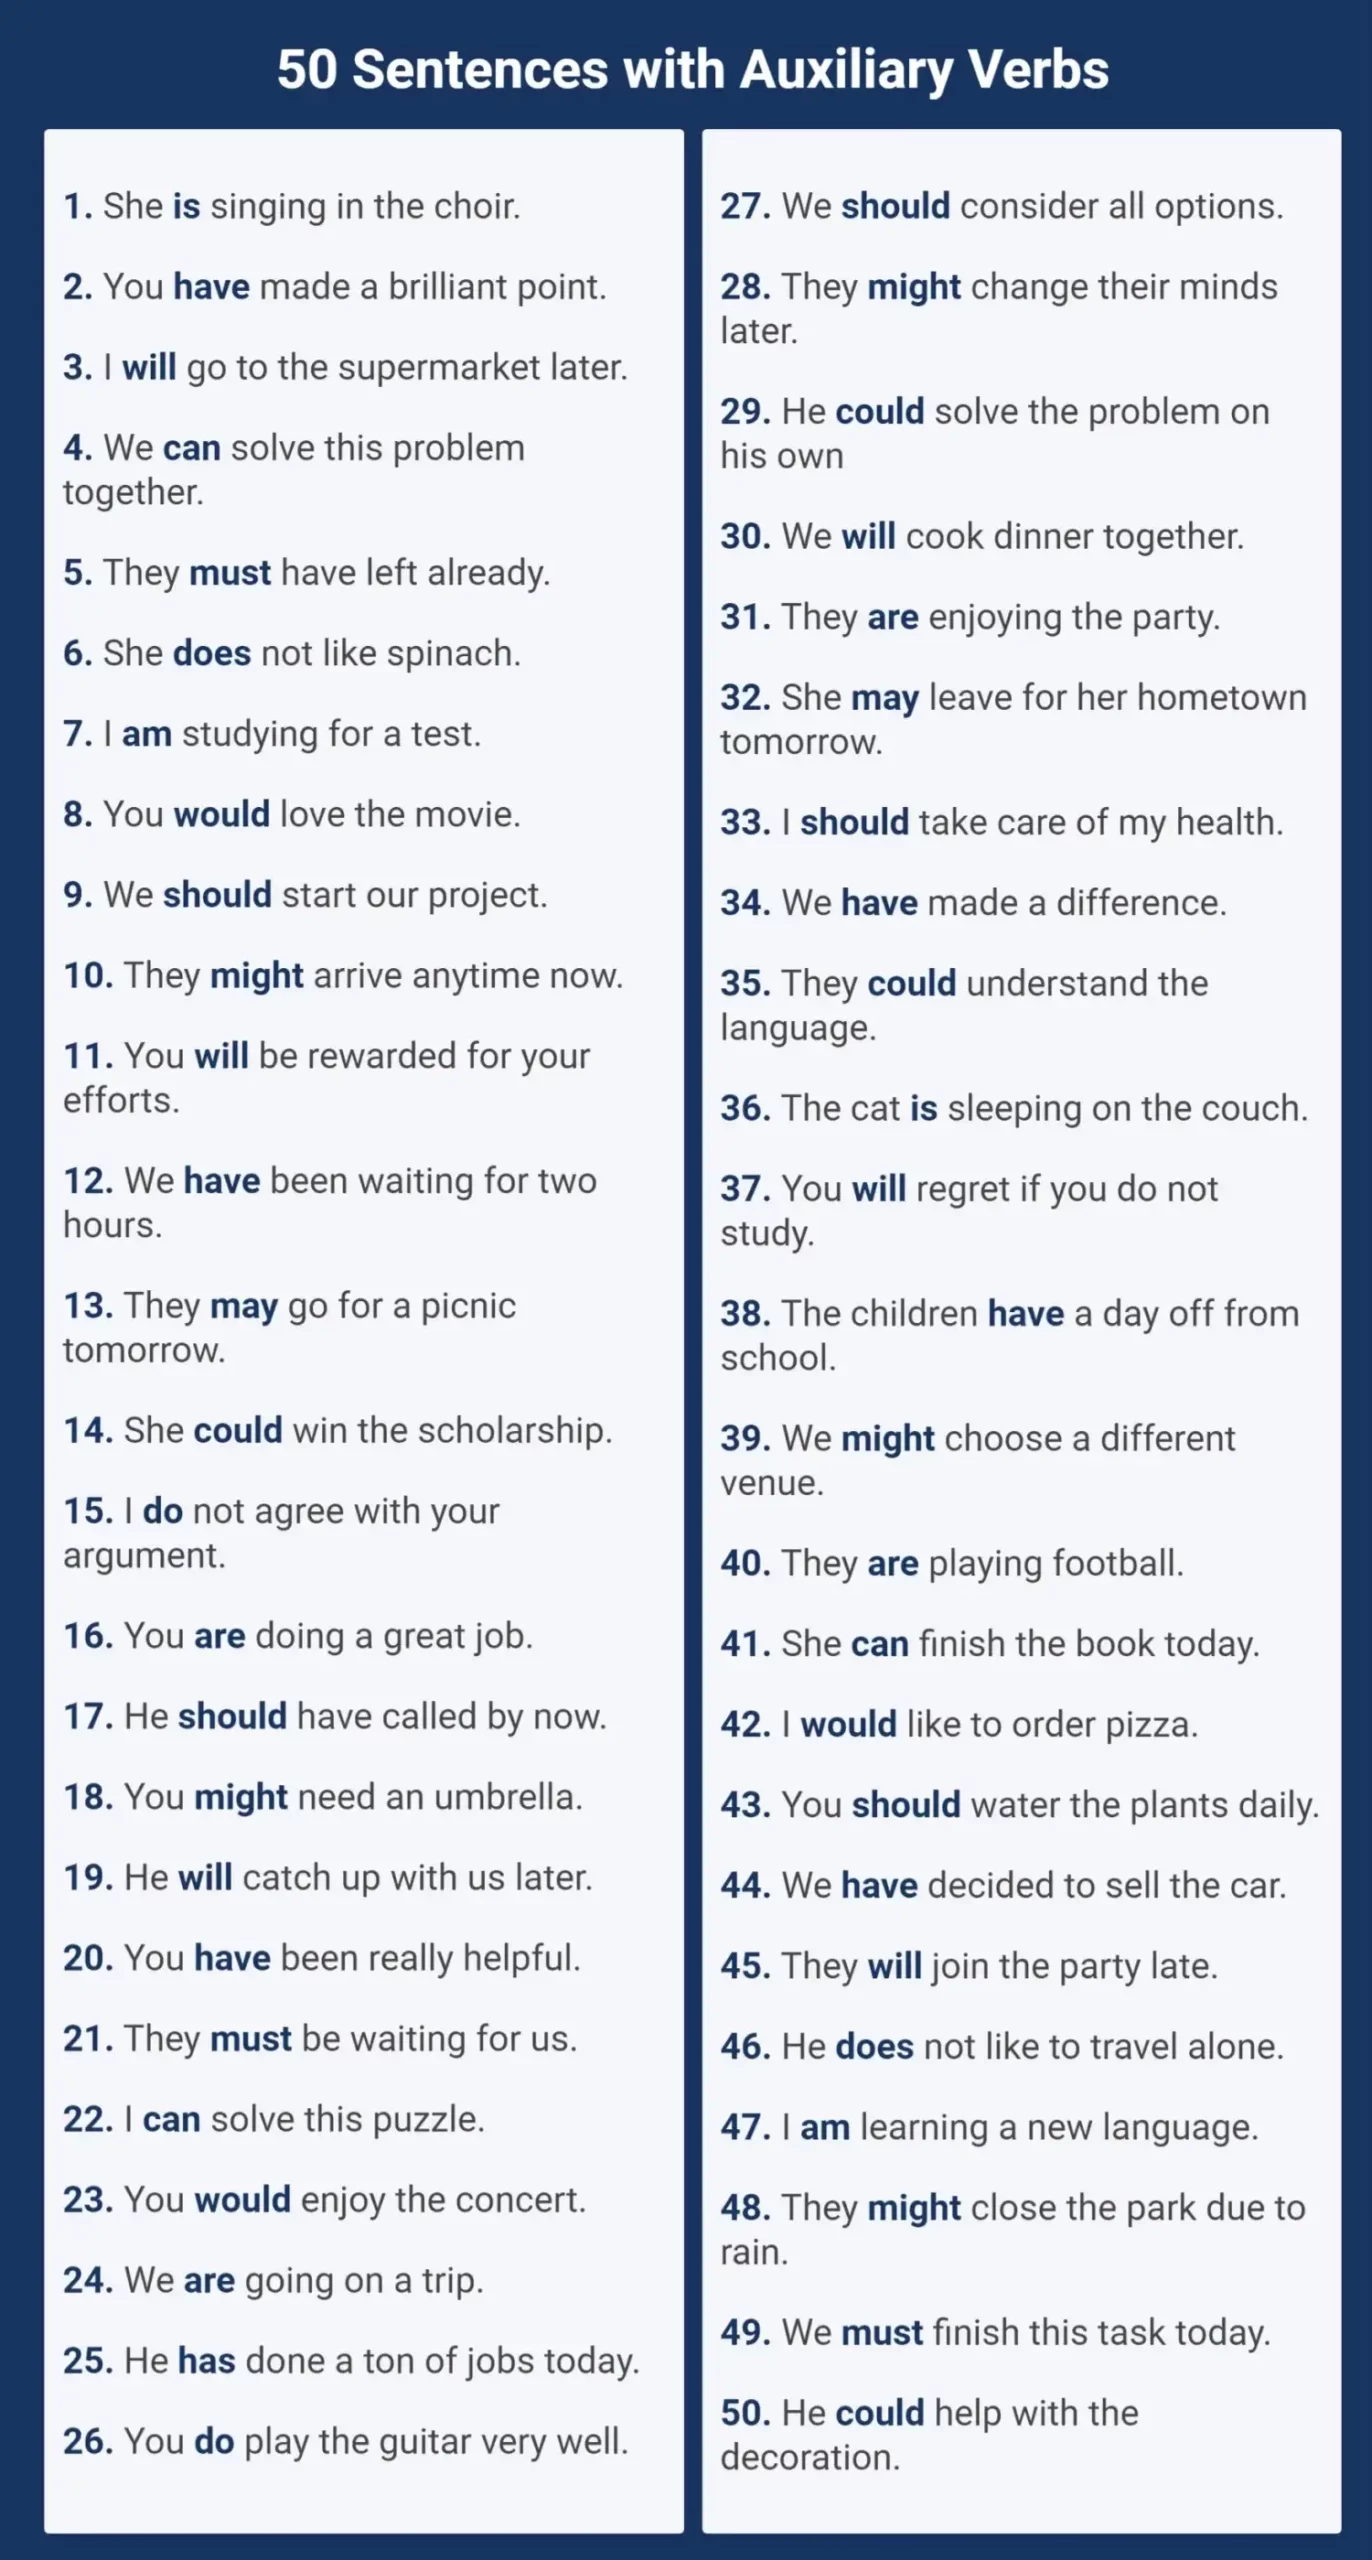 50 Oraciones con verbos auxiliares en inglés full